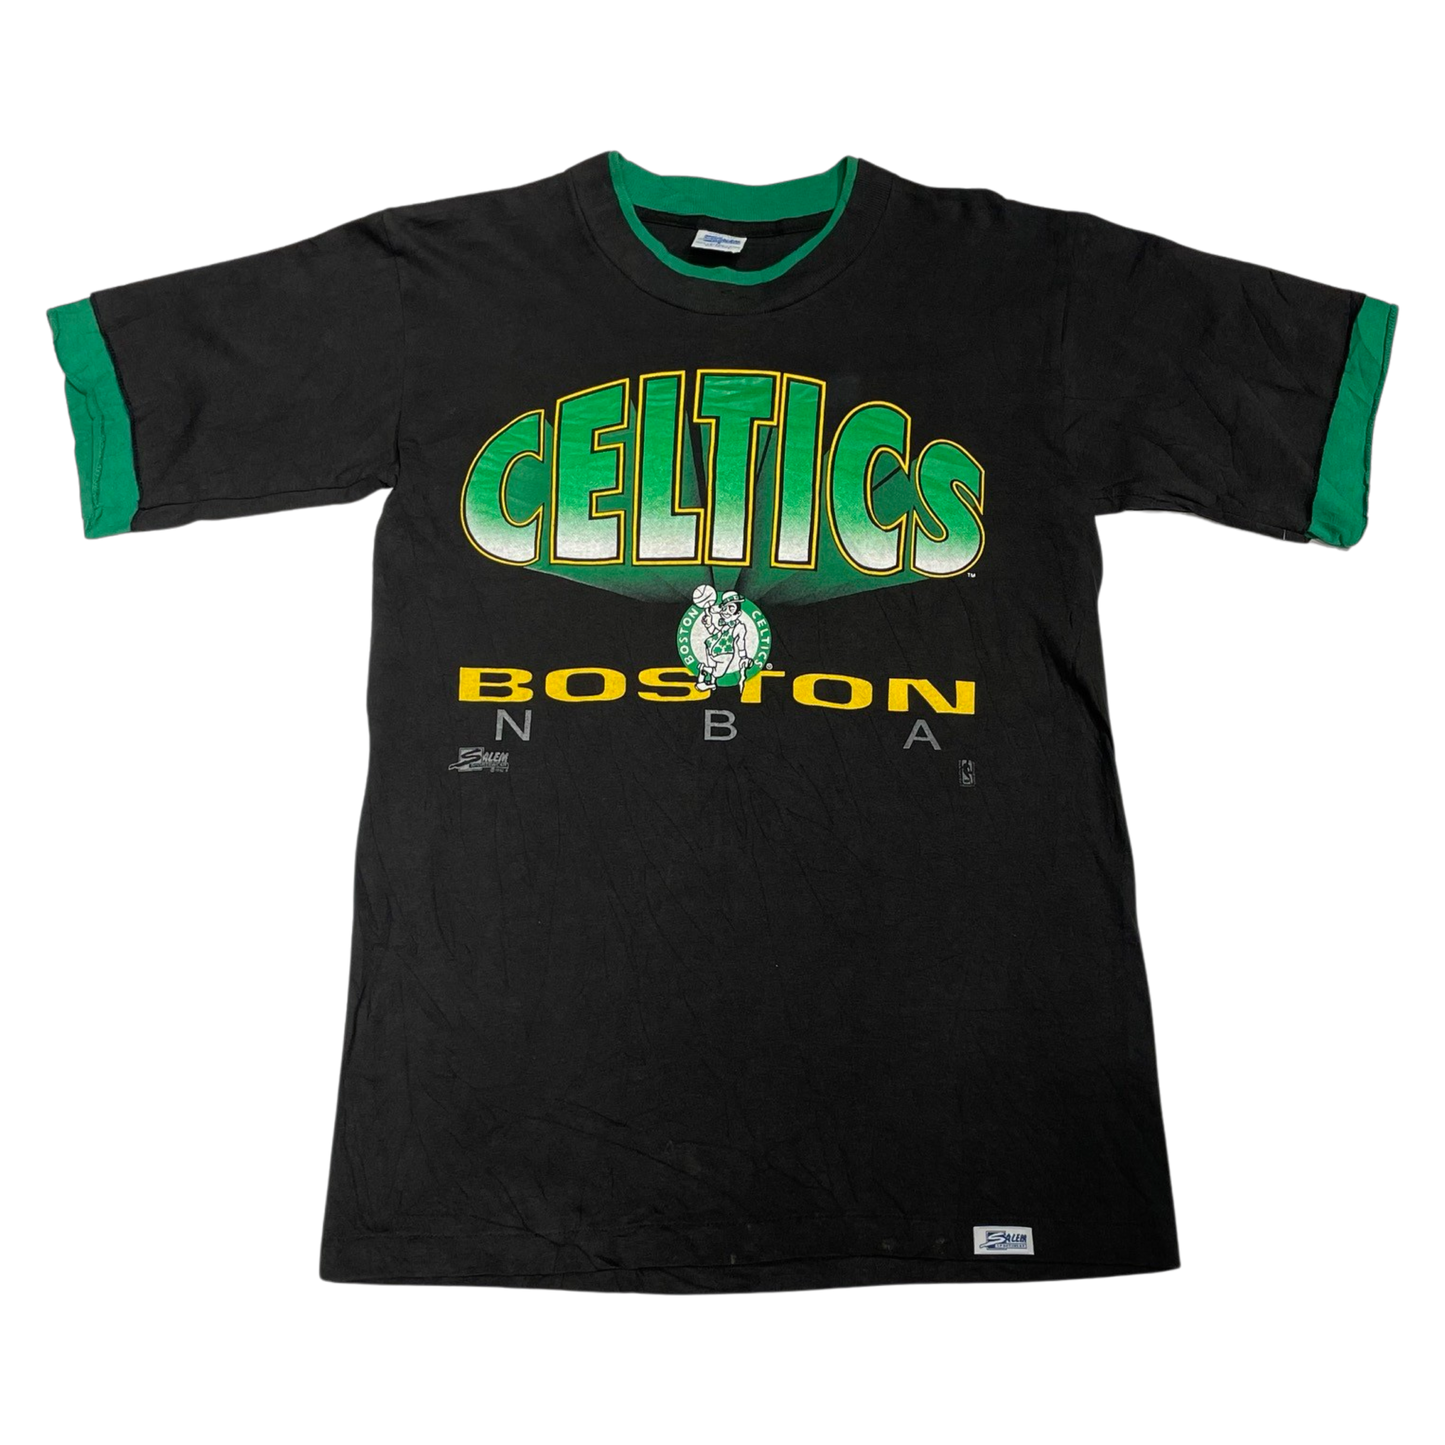 '90s Boston Celtics Tee